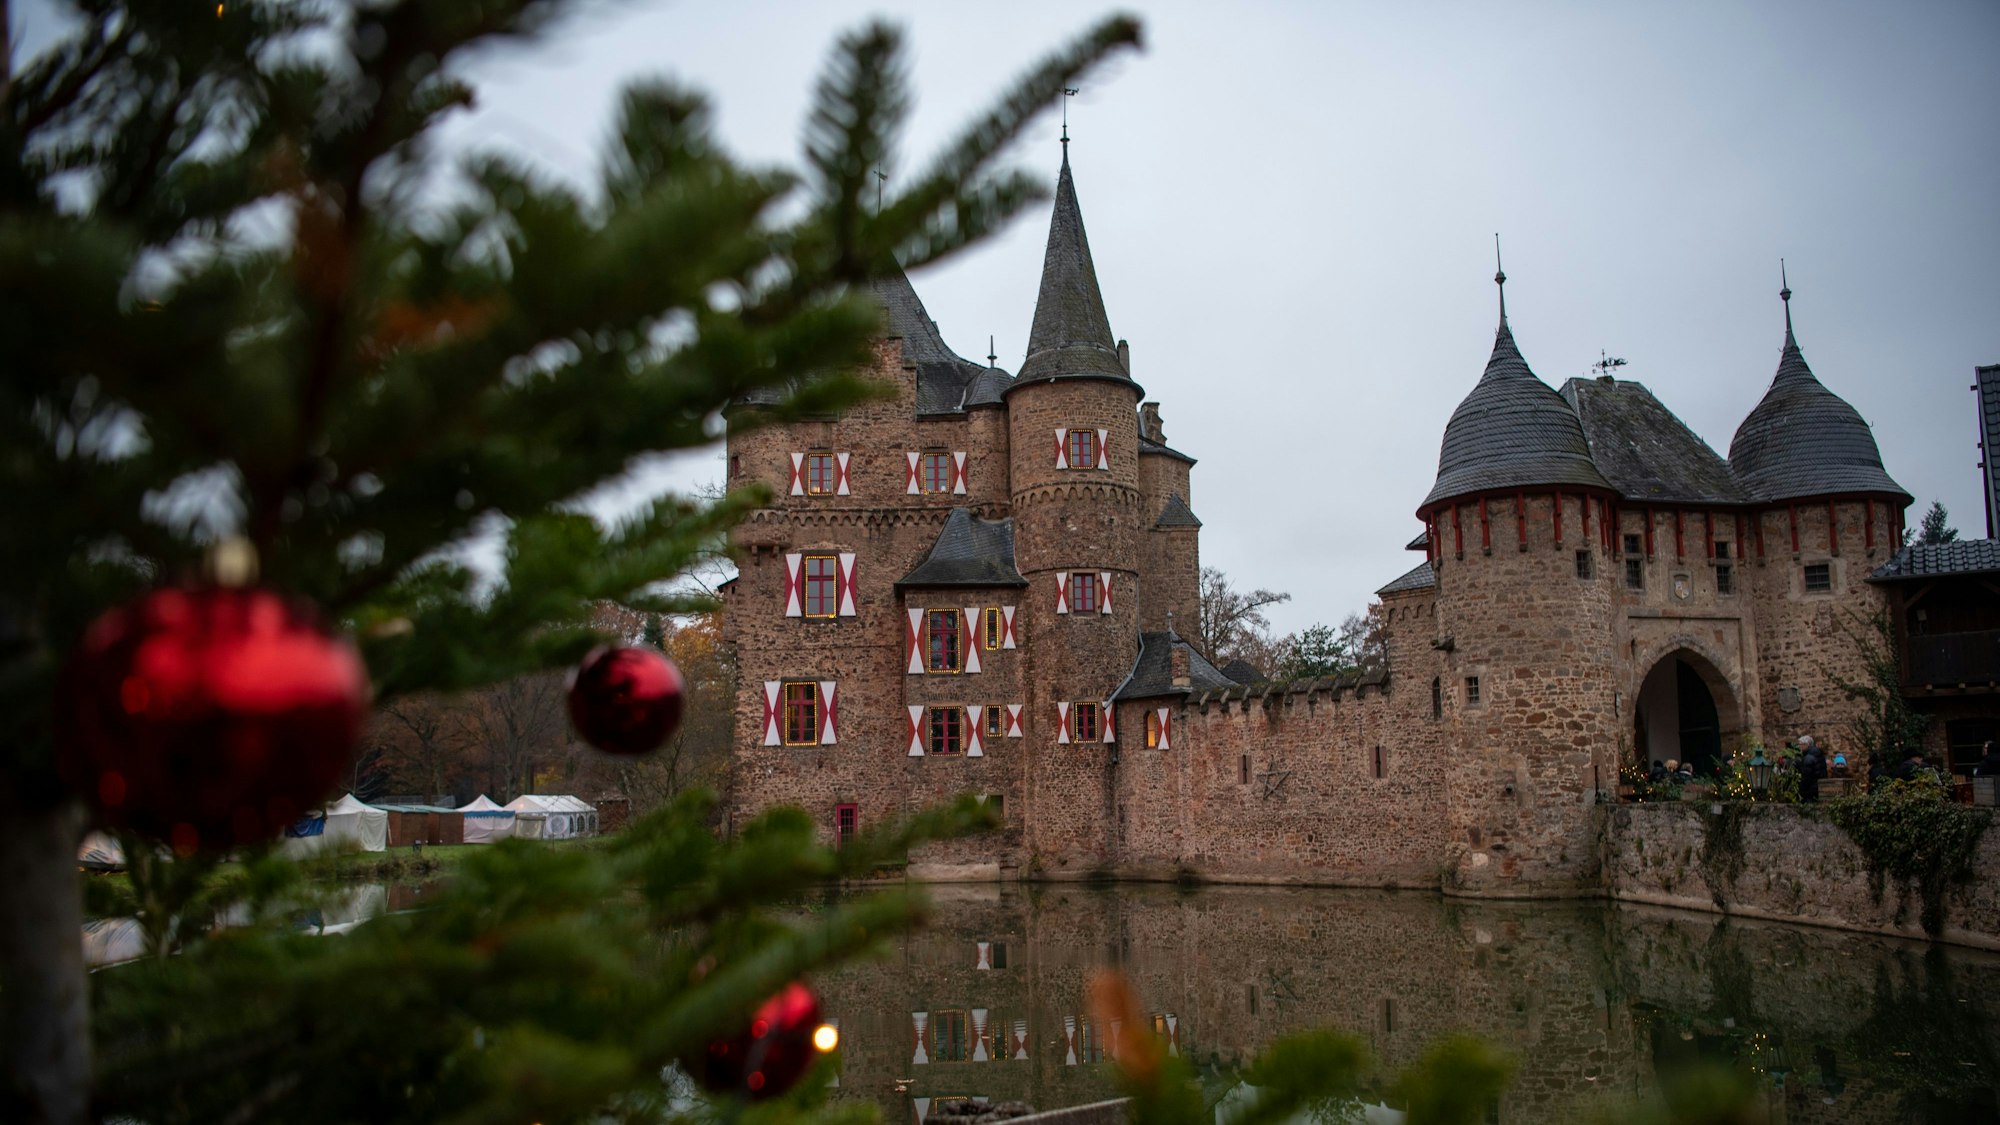 Neben einem geschmückten Weihnachtsbaum ist die Burg Satzvey zu erkennen.